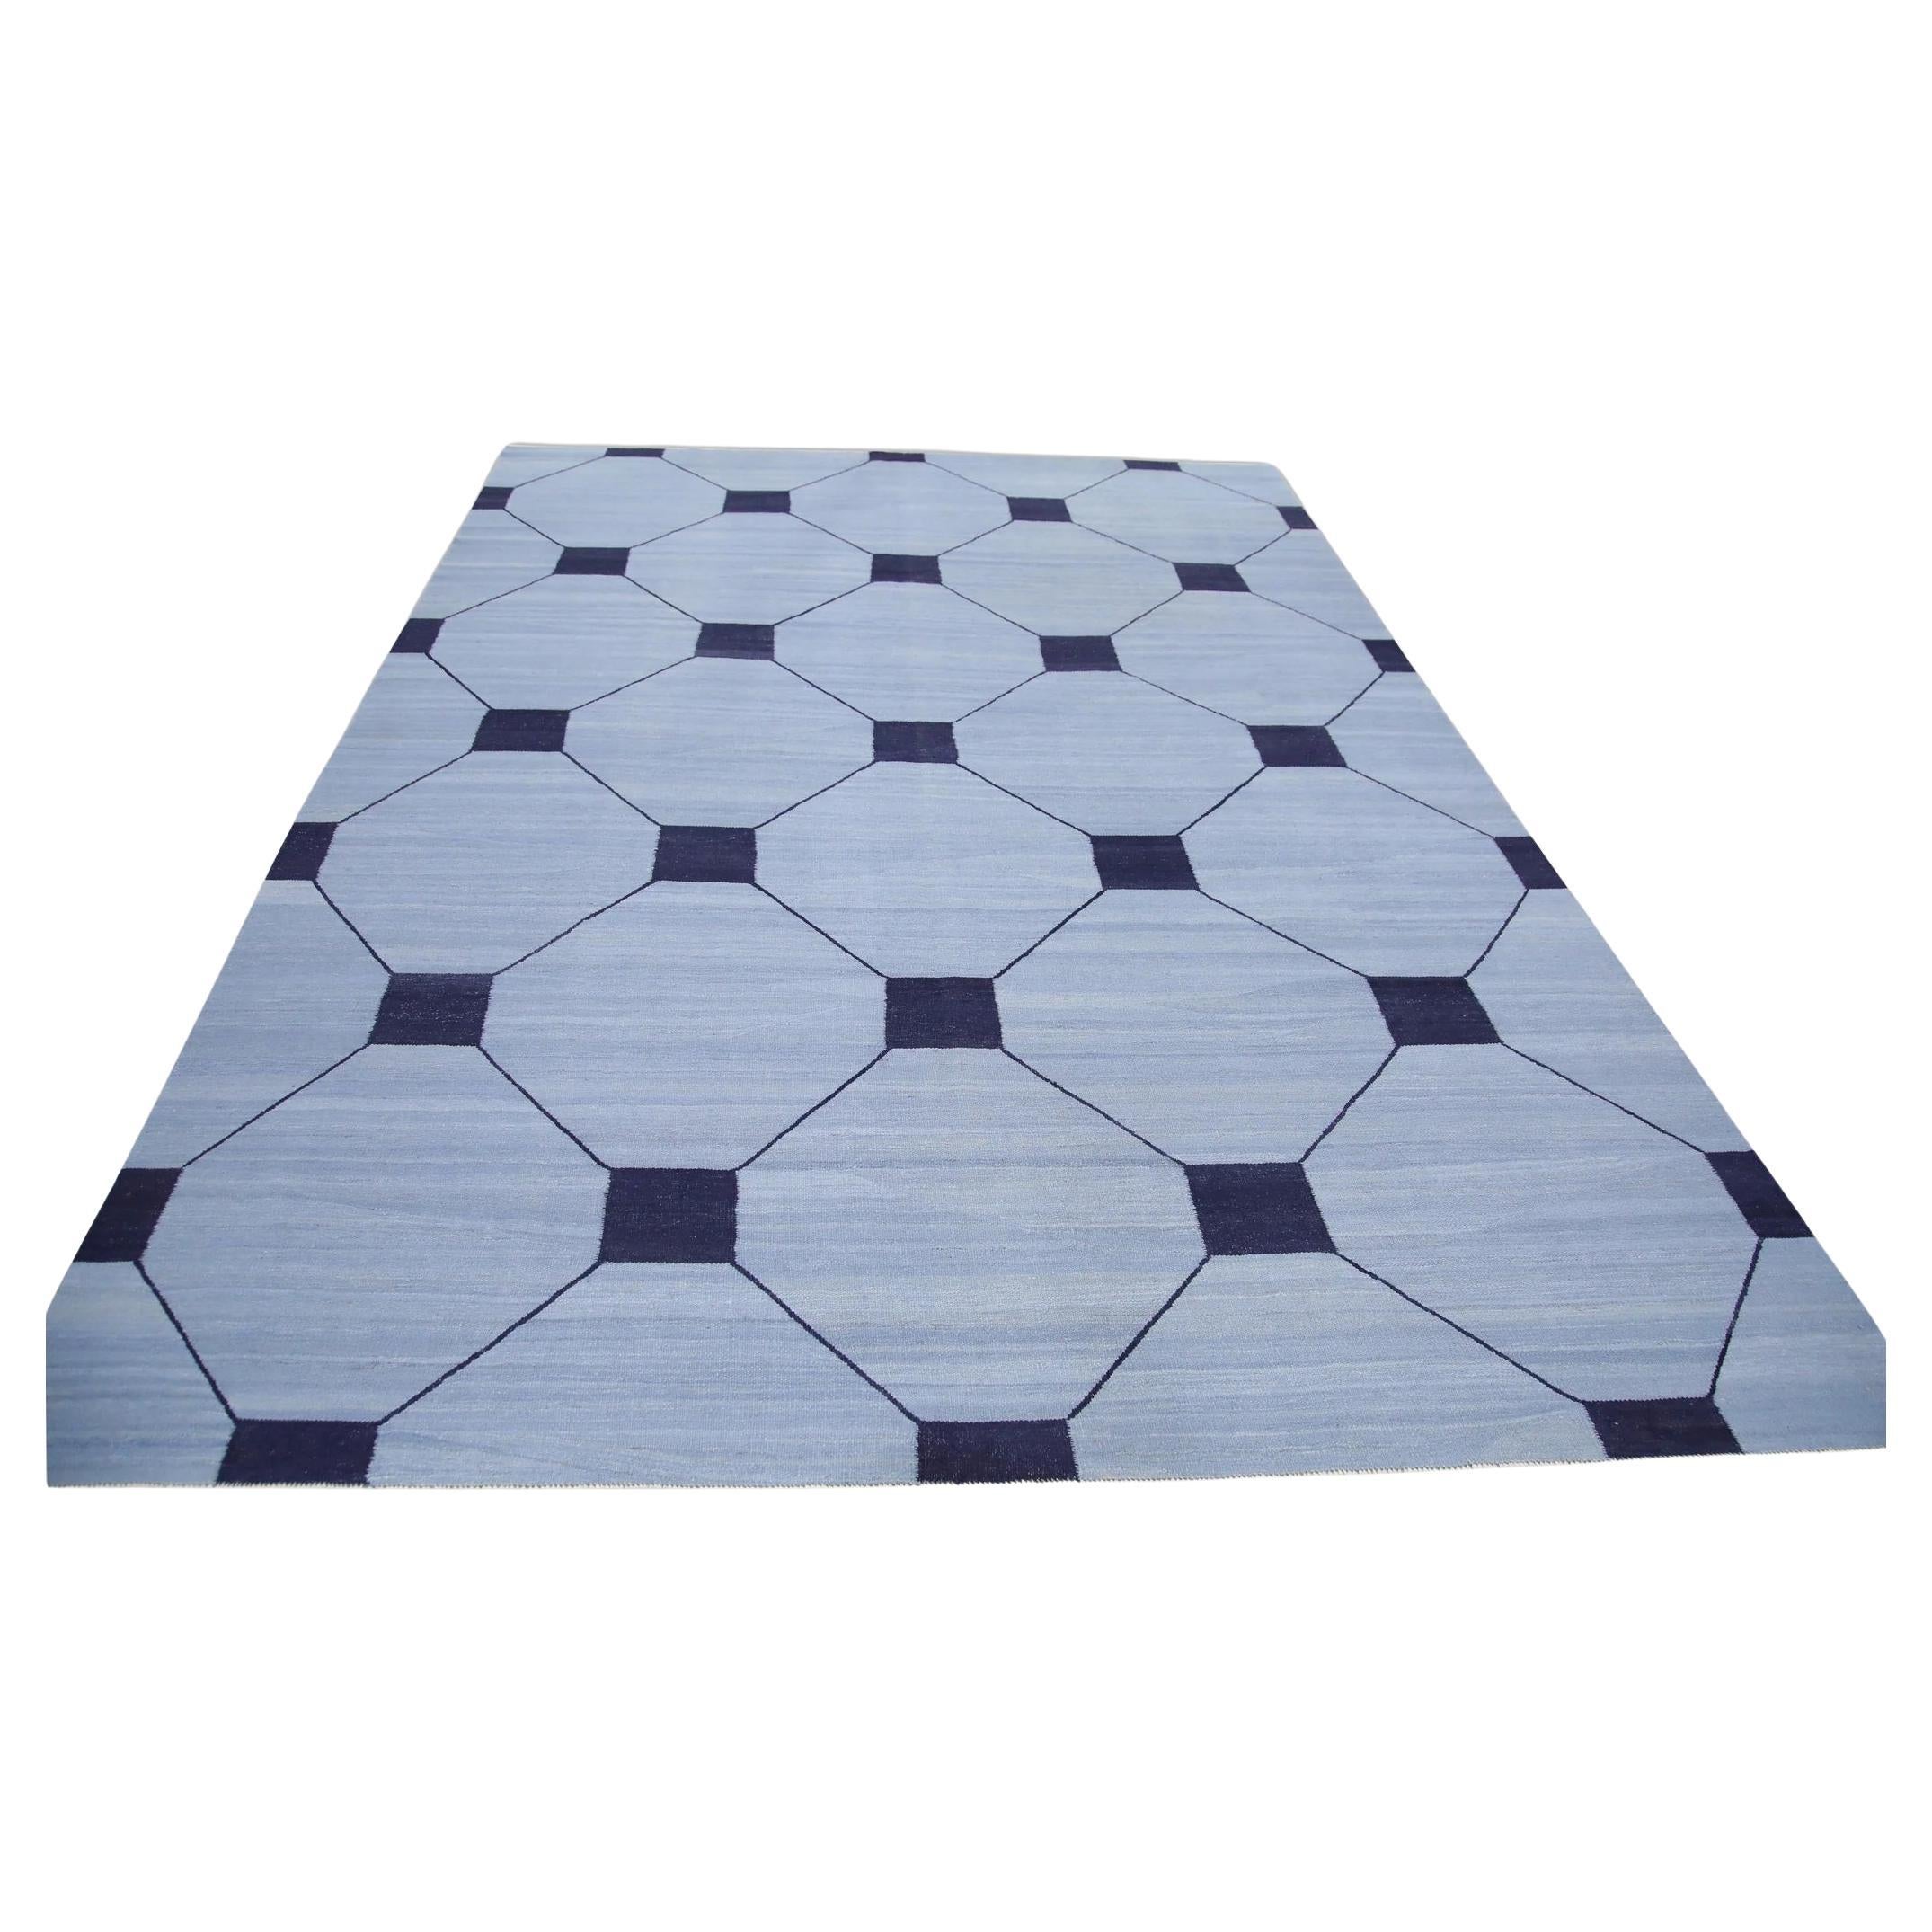 Blue Flatweave Handmade Wool Rug in Navy Geometric Design 9' x 12'7"